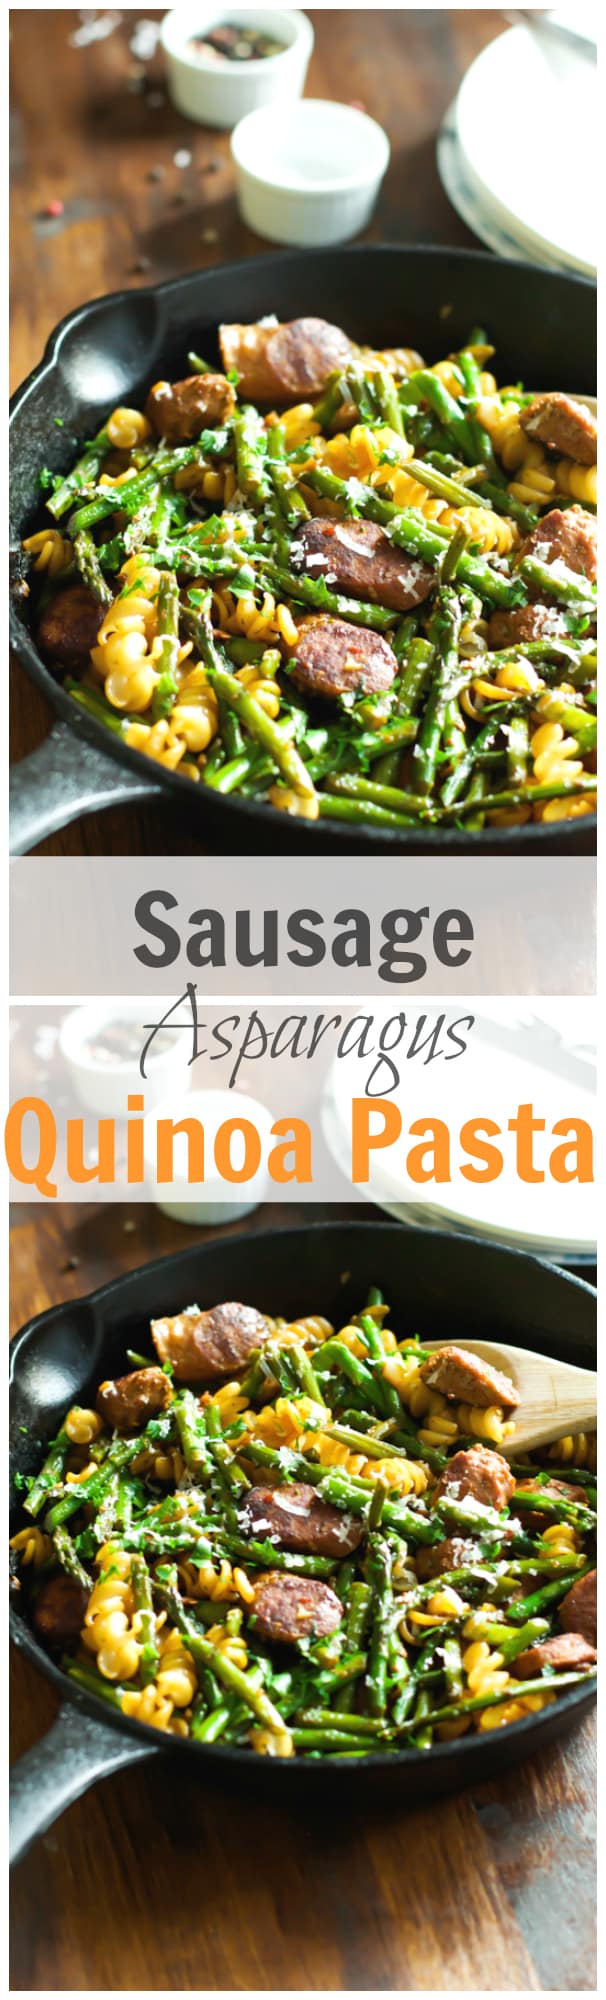 Sausage Asparagus Quinoa Pasta